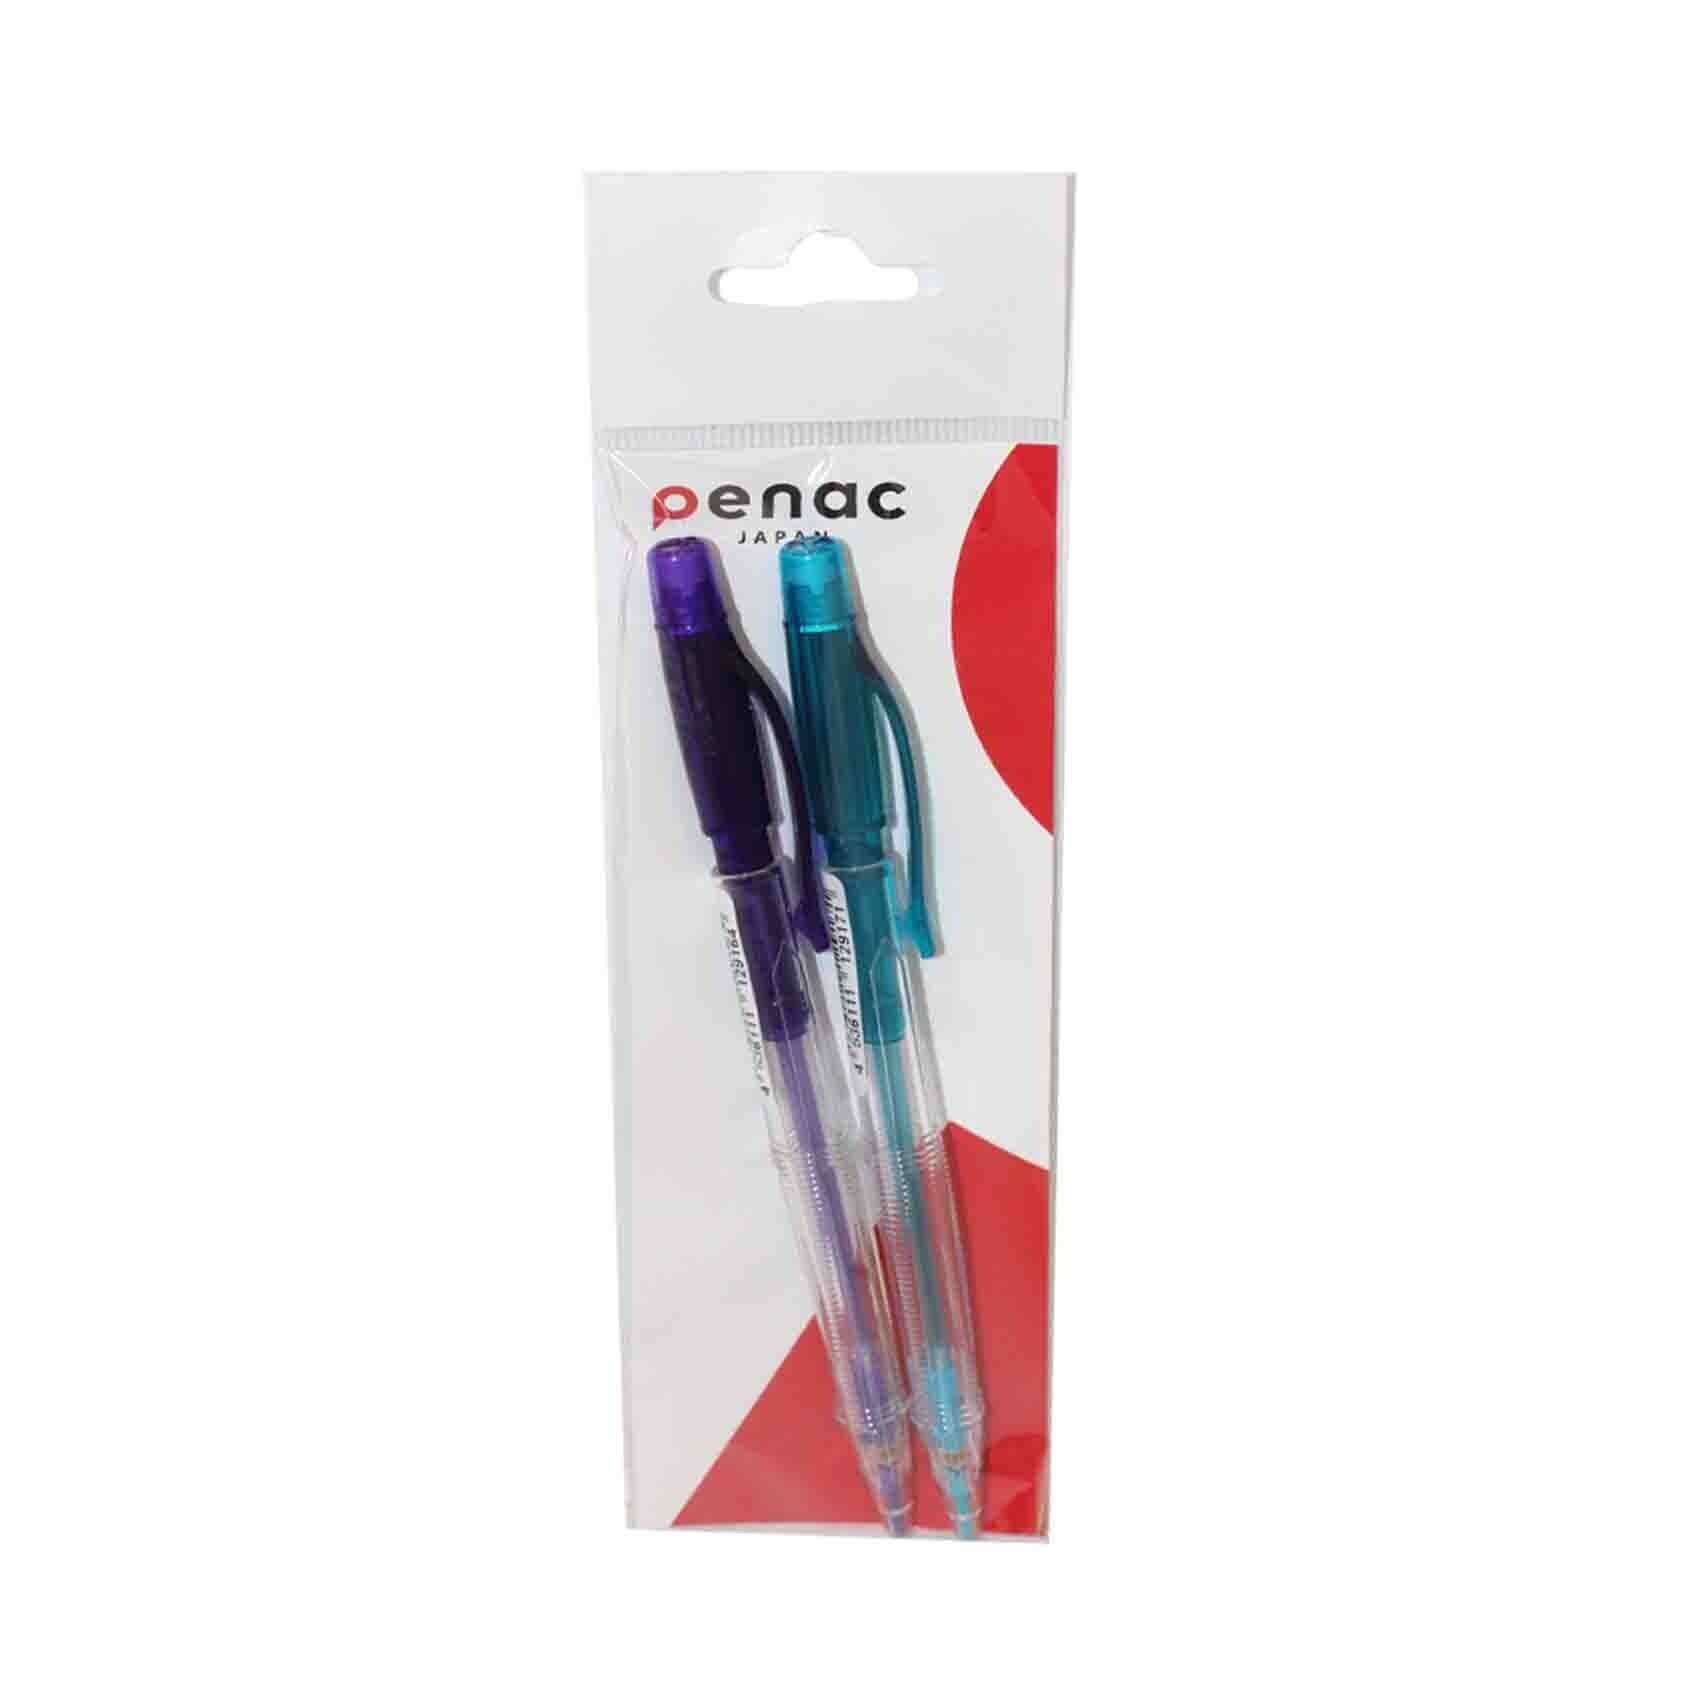 Paper Mate Profile 0.7mm Mechanical Pencil Set - Shop Pencils at H-E-B